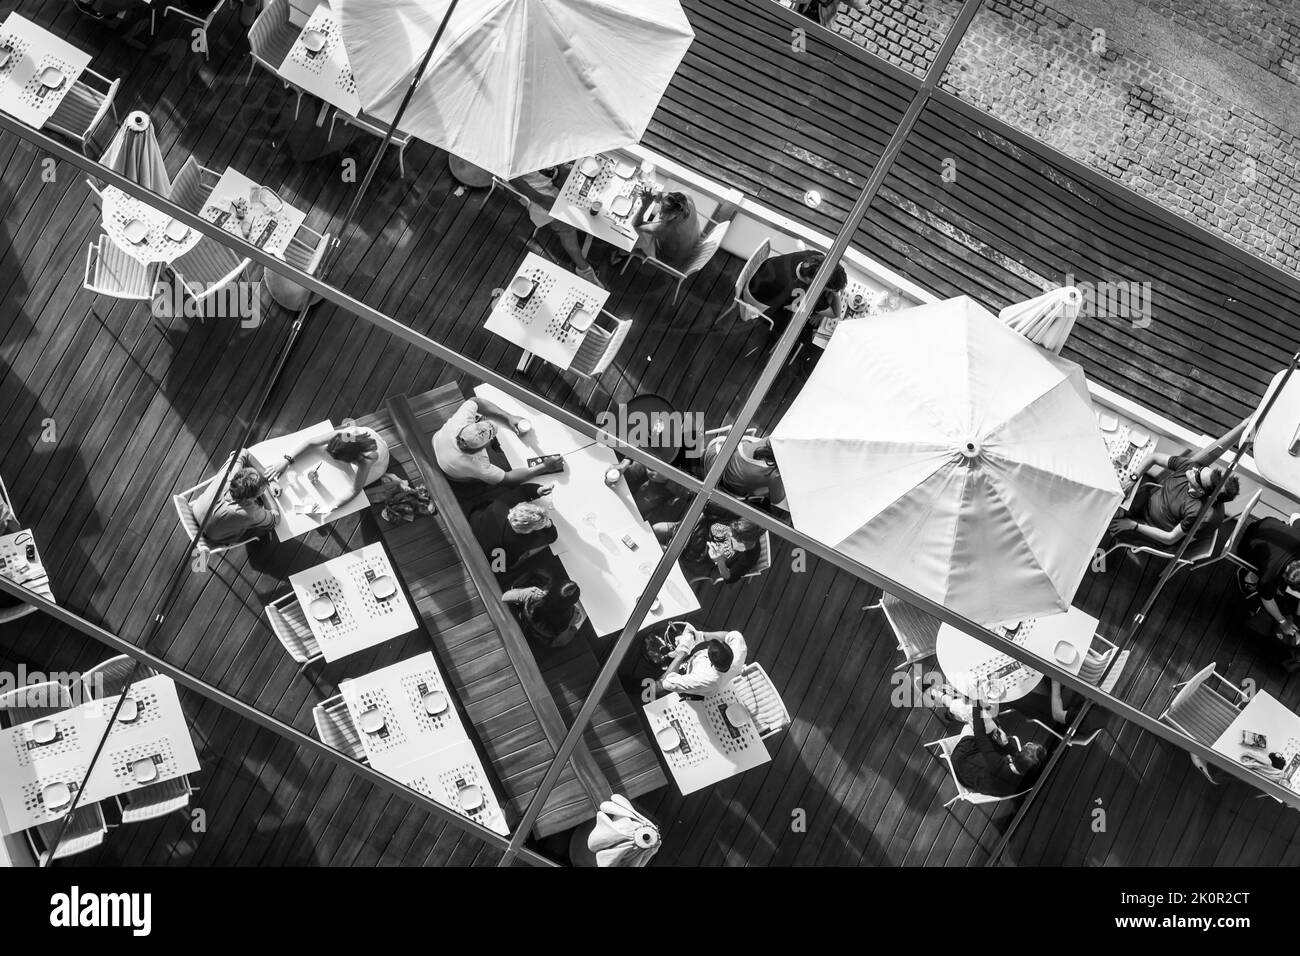 Barcelona, España - 9 de junio de 2011: Reflejo del techo espejo del café de la calle con los clientes. Fotografía en blanco y negro Foto de stock